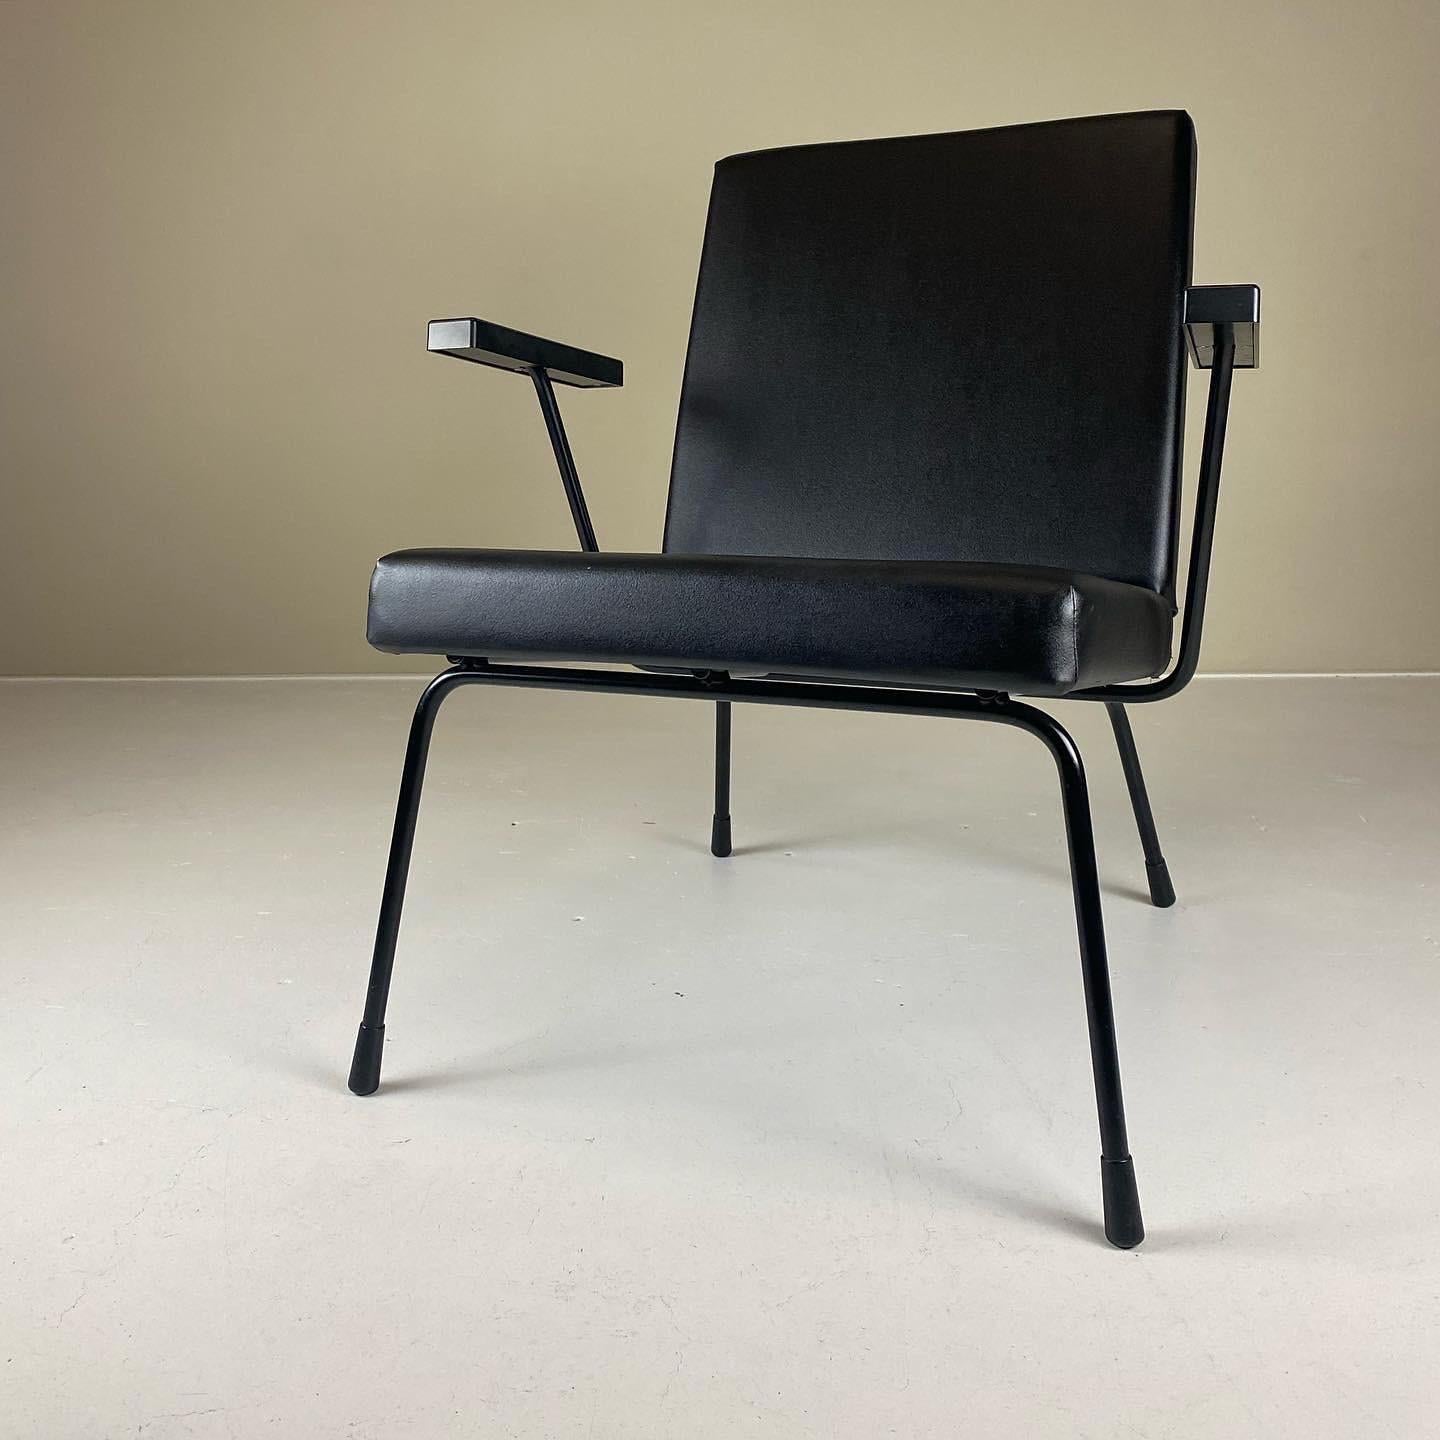 Dieser Sessel 1407 wurde 1954 als erschwinglicher Sessel für niederländische Haushalte eingeführt und ist seitdem ein Designklassiker. Er wurde von Wim Rietveld (Sohn von Gerrit Rietveld) und Andre Cordemeyer für den niederländischen Hersteller